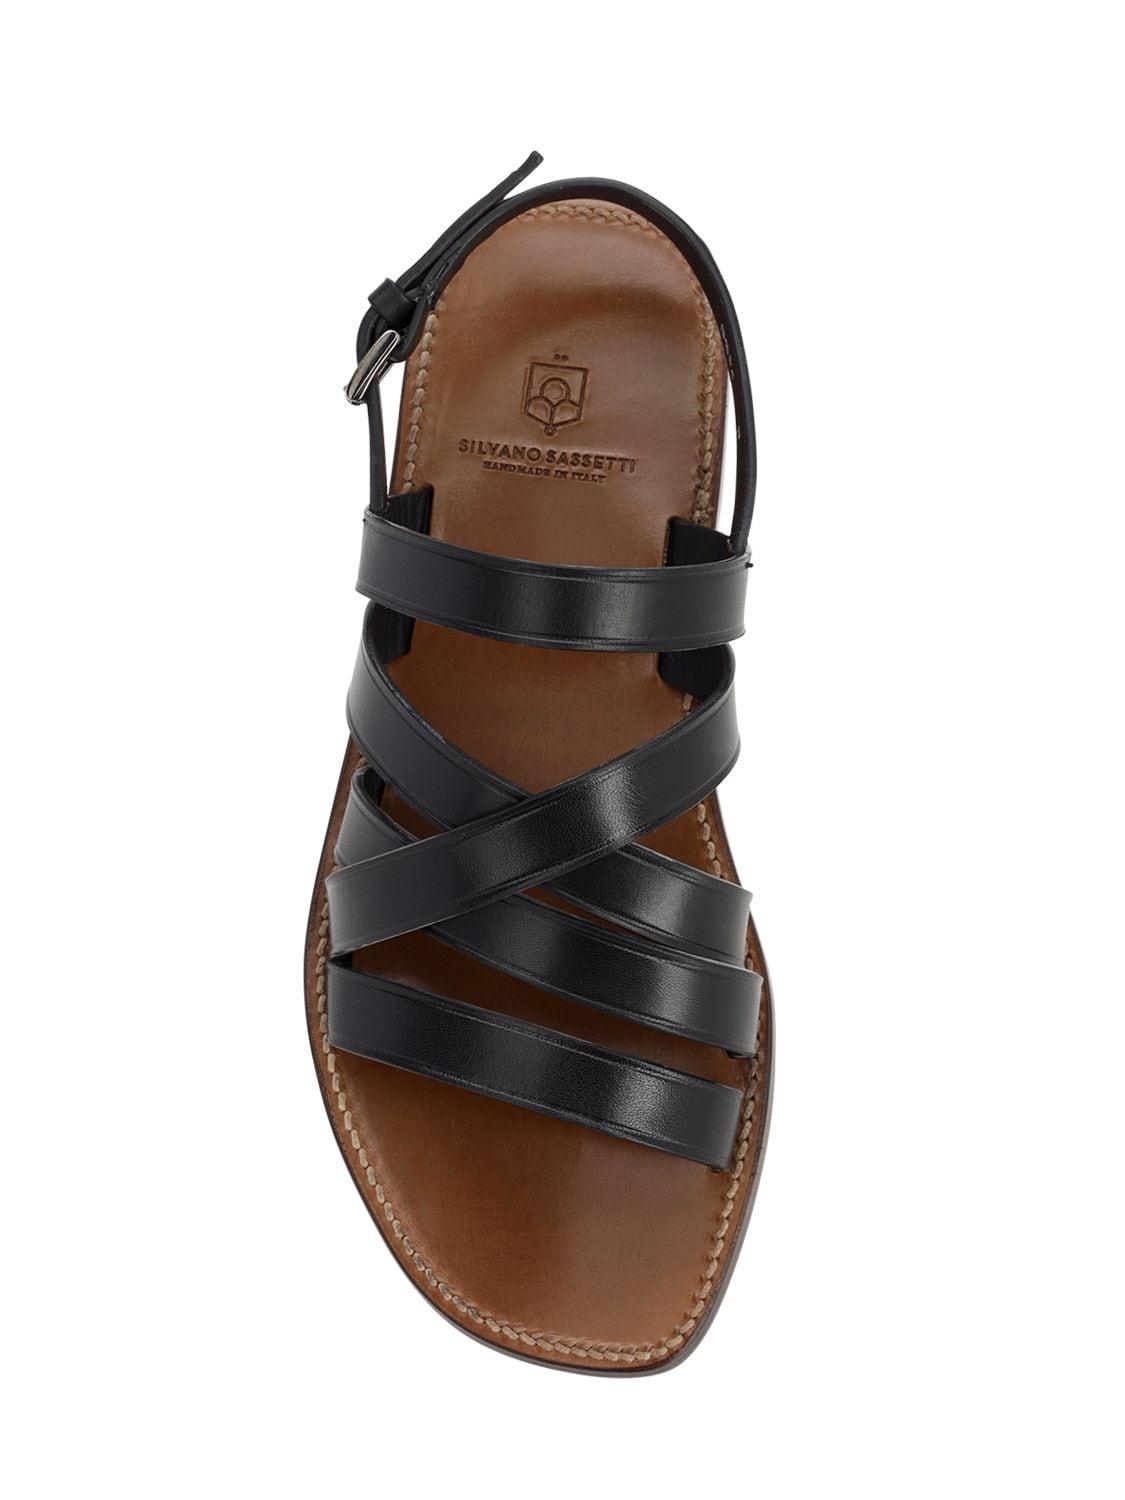 Silvano Sassetti 15mm Intreccio Leather Sandals in Black for Men - Lyst